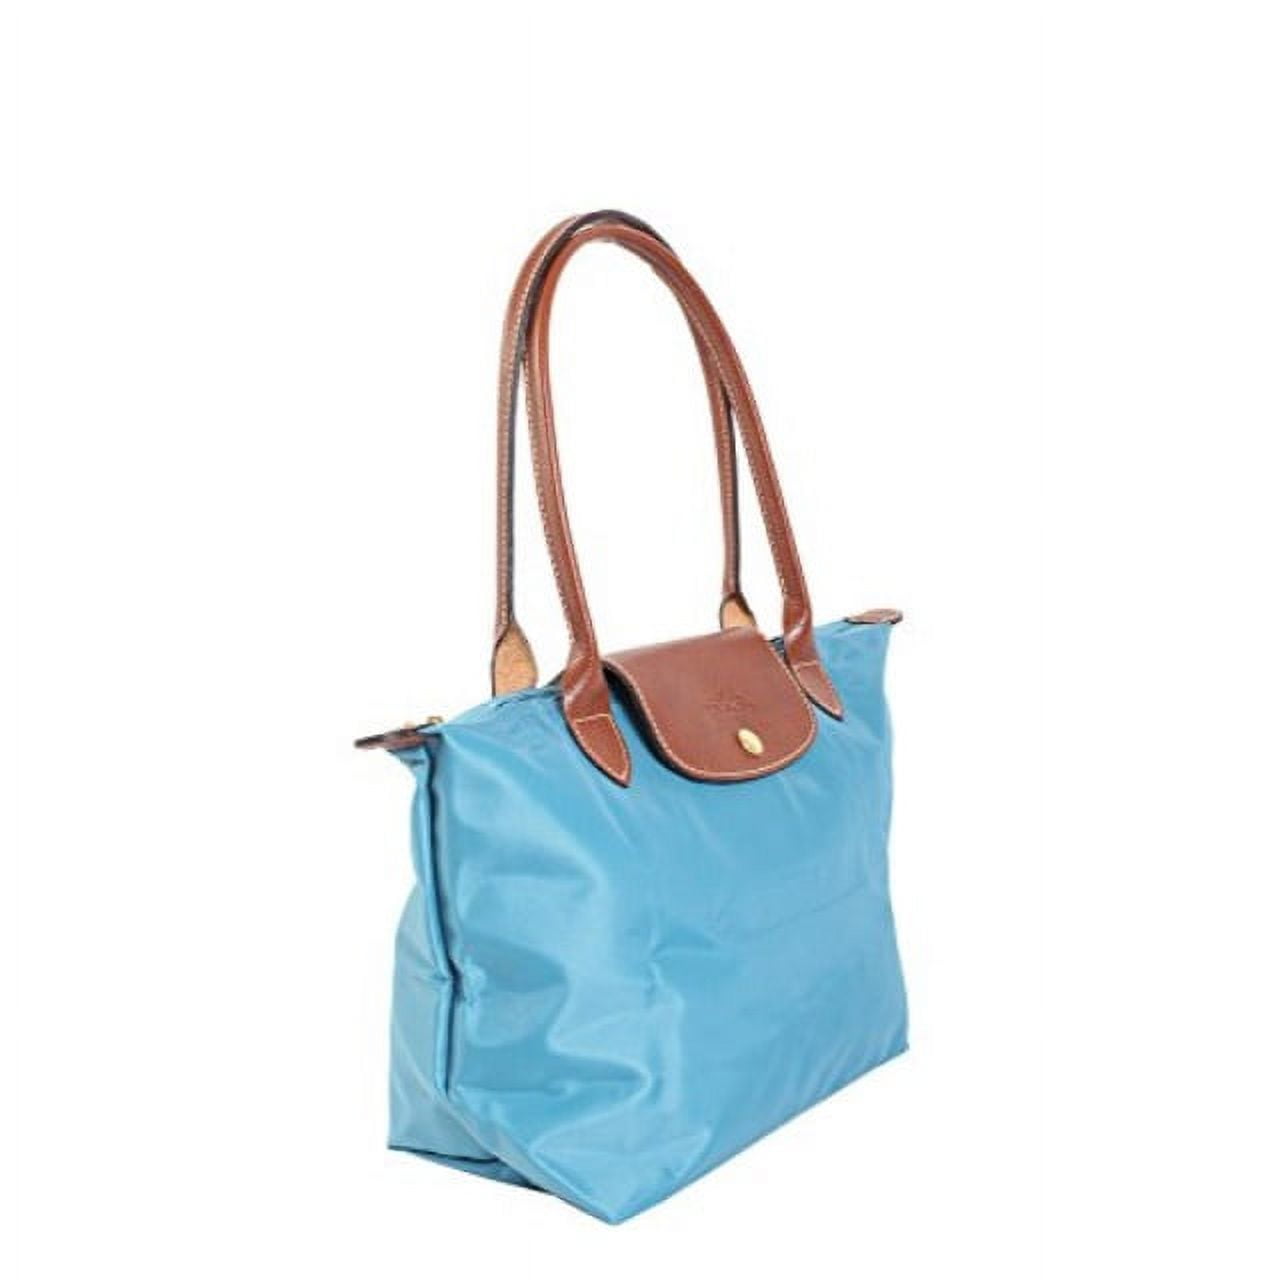 longchamp bag | designer bag | summer bag | travel bag | school bag | Longchamp  bag, Longchamp tote, Navy